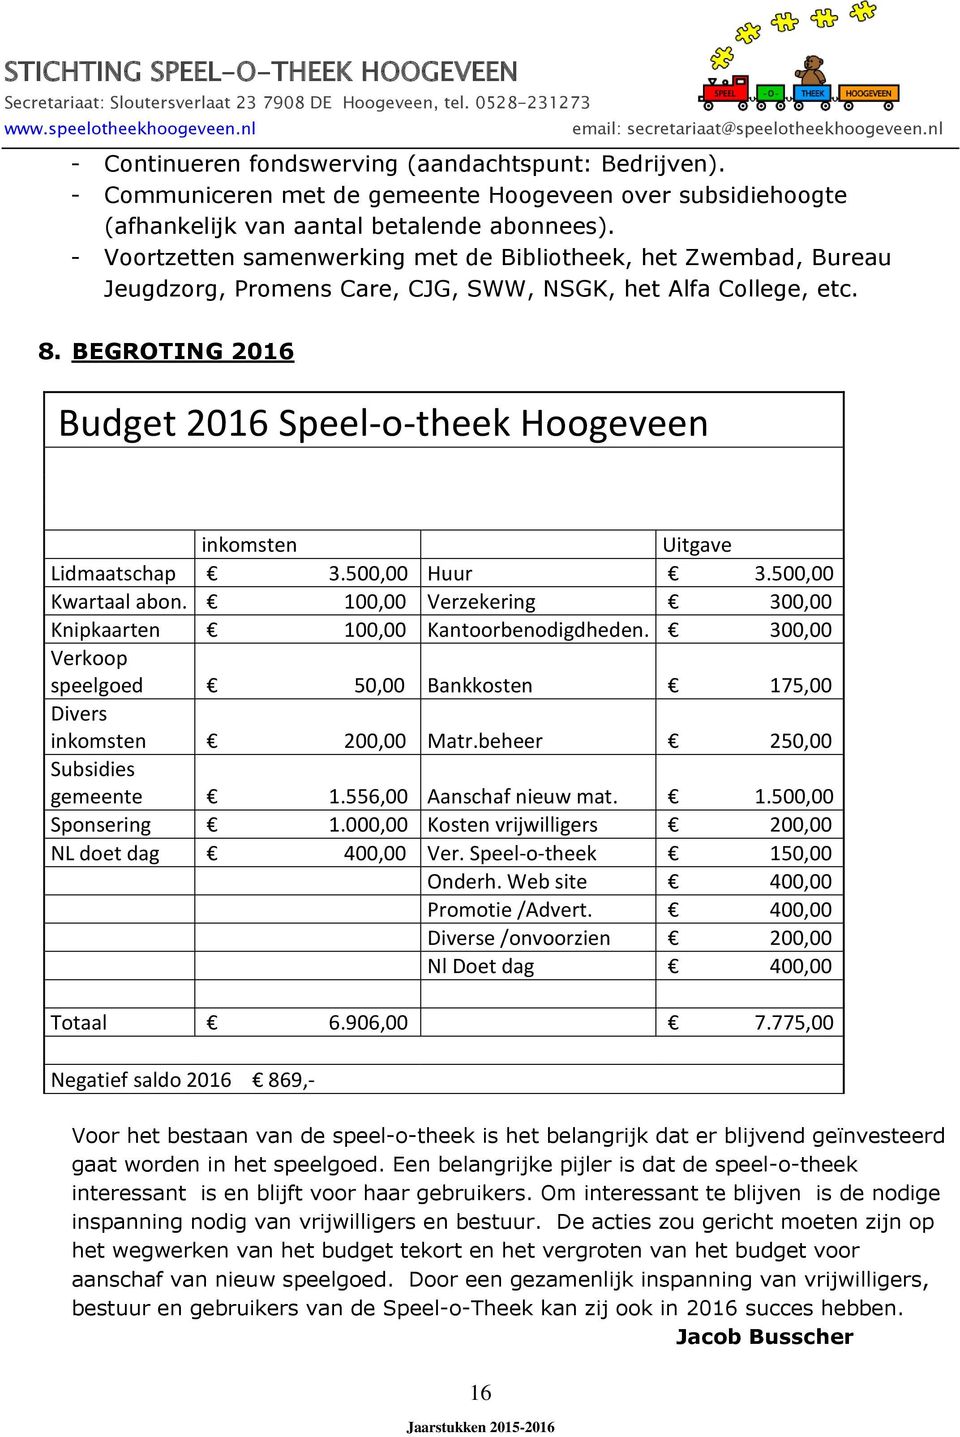 BEGROTING 2016 Budget 2016 Speel-o-theek Hoogeveen inkomsten Uitgave Lidmaatschap 3.500,00 Huur 3.500,00 Kwartaal abon. 100,00 Verzekering 300,00 Knipkaarten 100,00 Kantoorbenodigdheden.